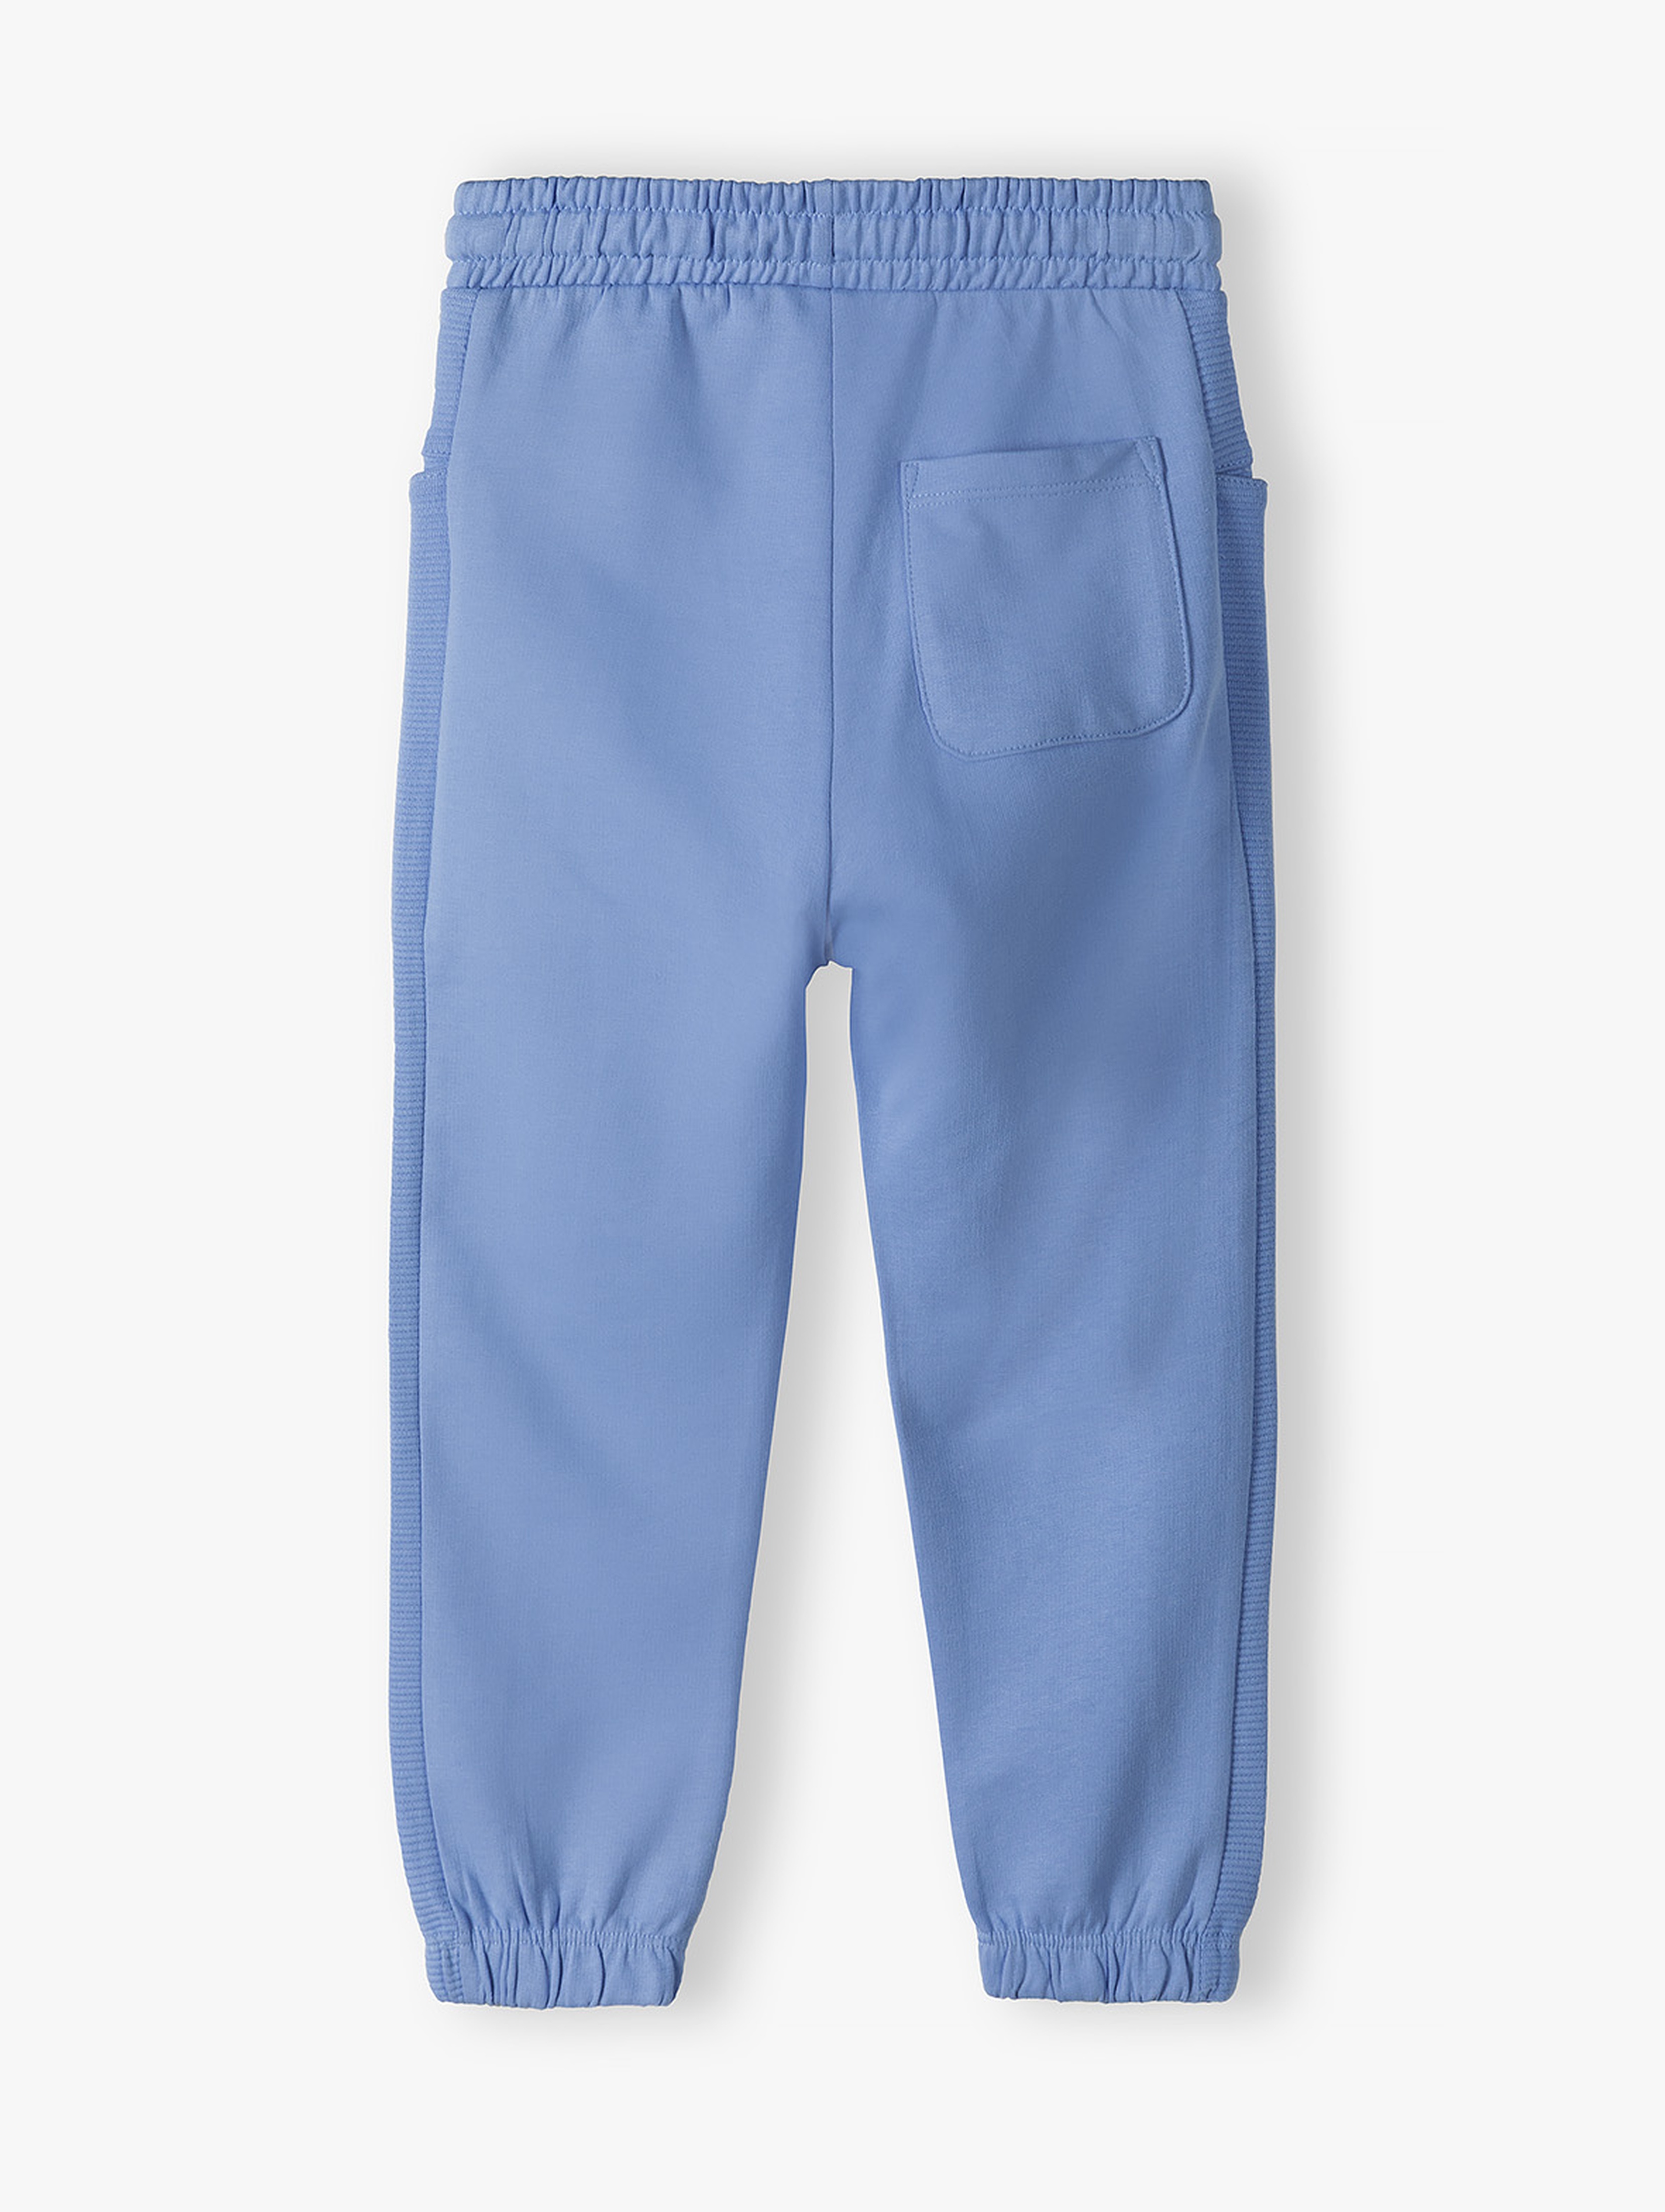 Niebieskie spodnie dresowe dla chłopca - 5.10.15.